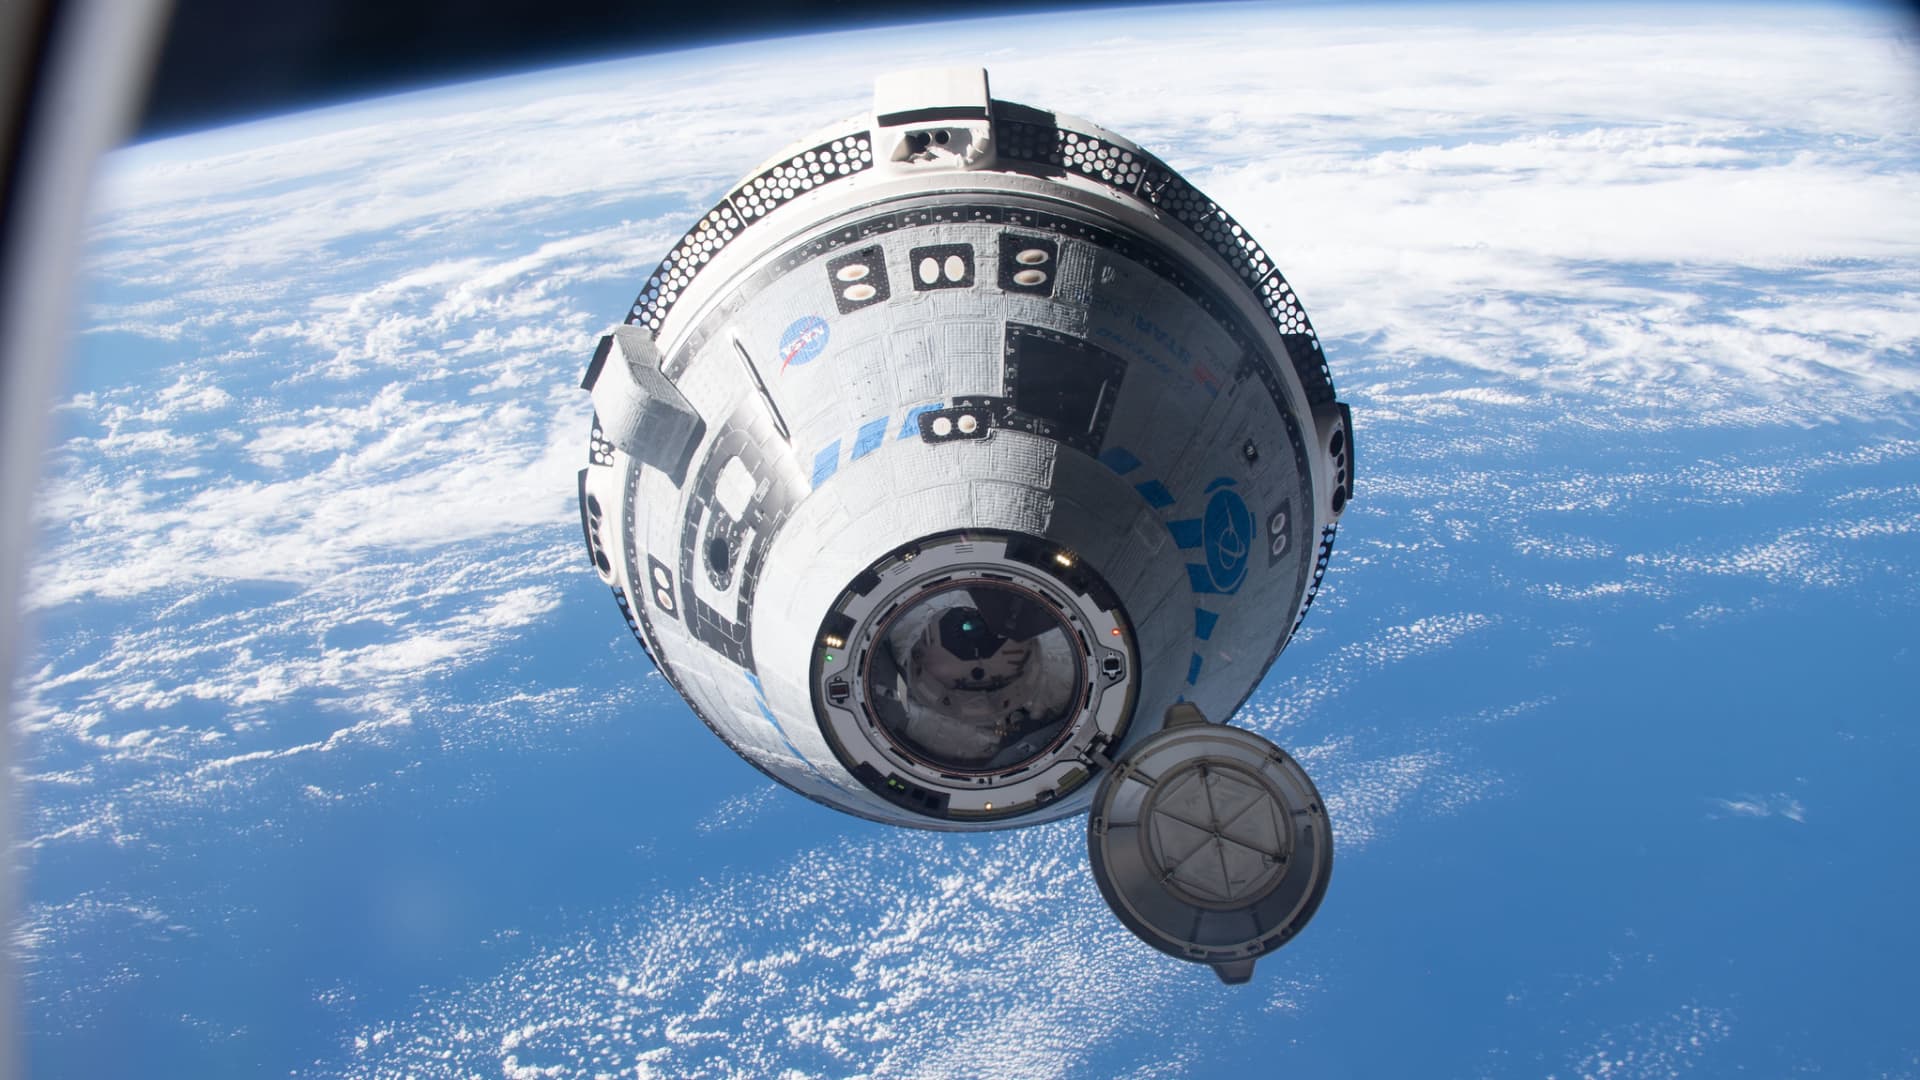 Boeing has lost $1.5 billion developing Starliner spacecraft for NASA